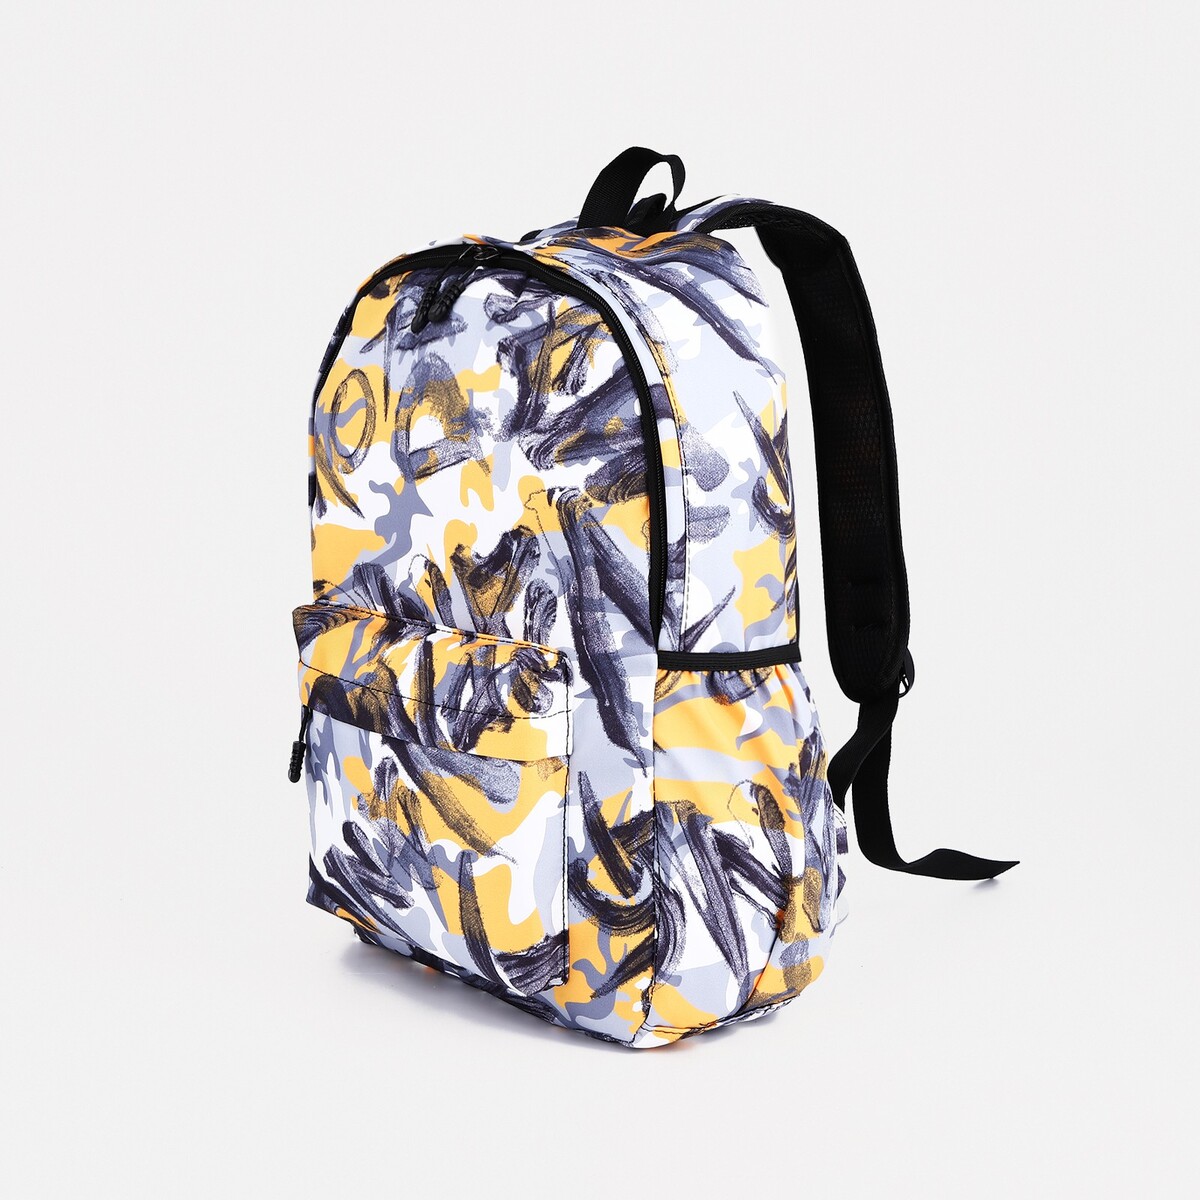 Рюкзак школьный из текстиля на молнии, 3 кармана, цвет желтый/серый рюкзак текстильный с карманом желтый 22х13х30 см